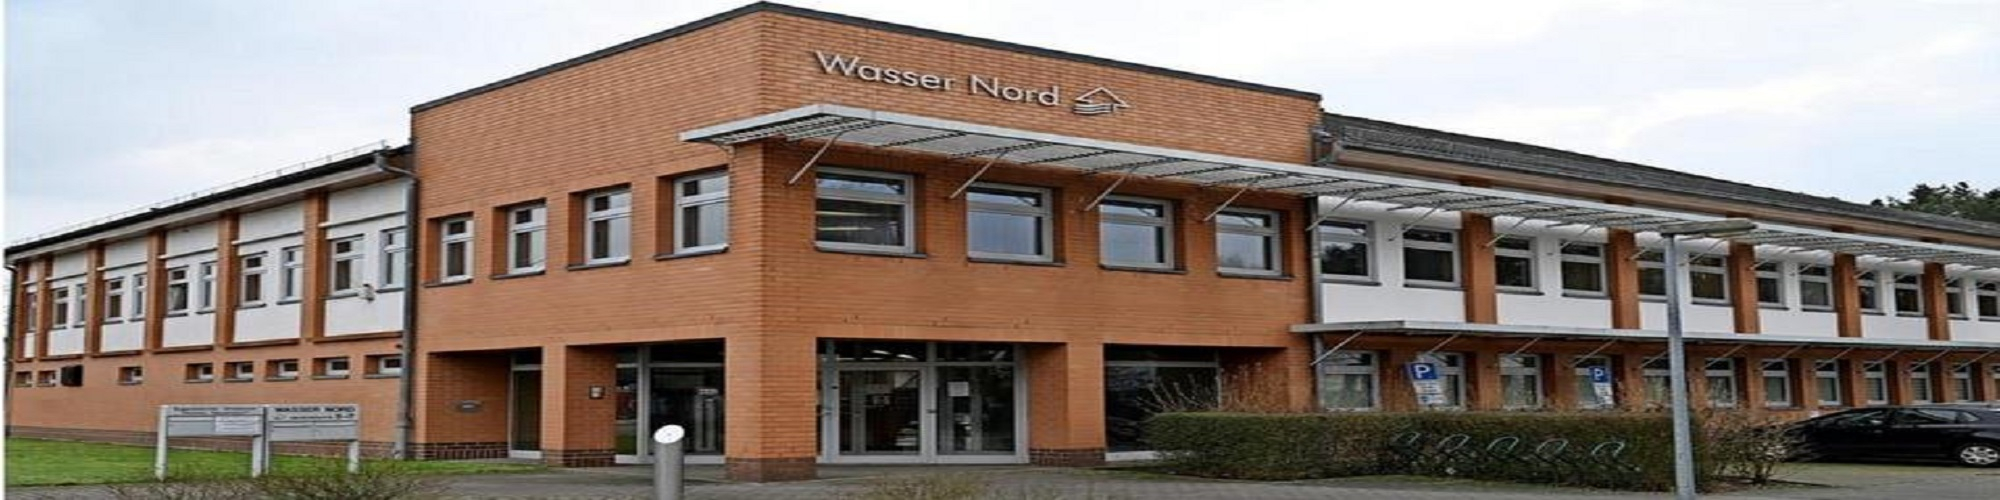 Wasser Nord GmbH & Co KG